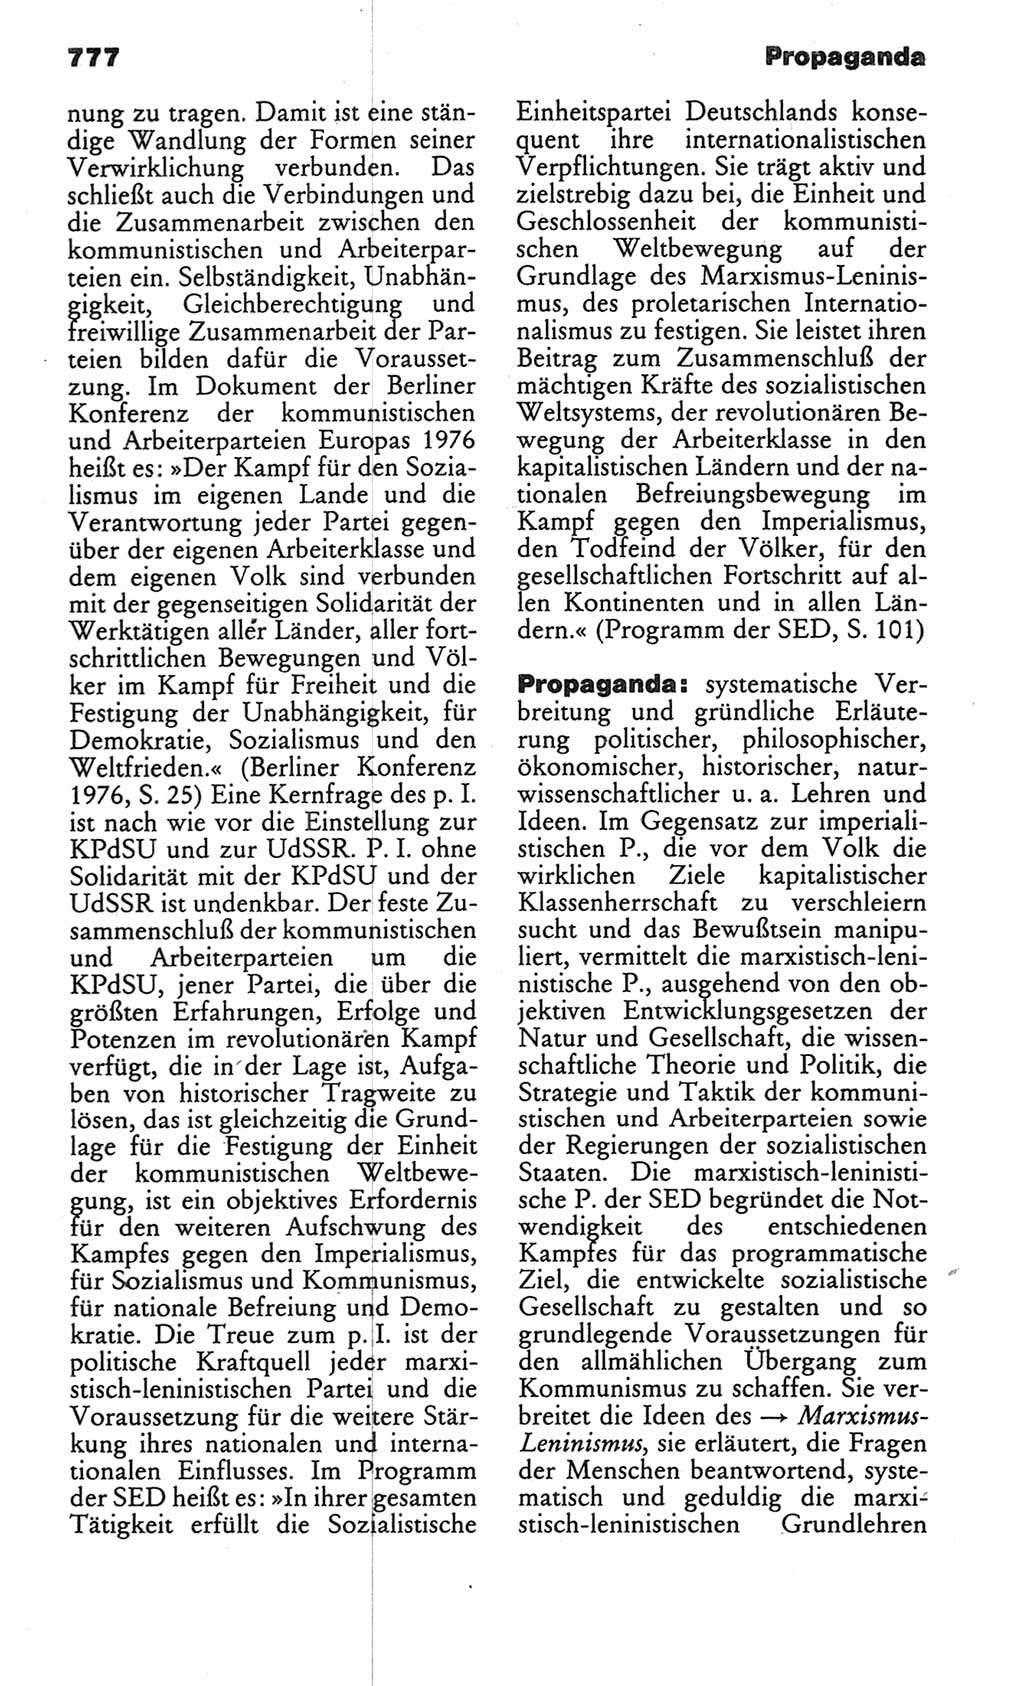 Kleines politisches Wörterbuch [Deutsche Demokratische Republik (DDR)] 1986, Seite 777 (Kl. pol. Wb. DDR 1986, S. 777)